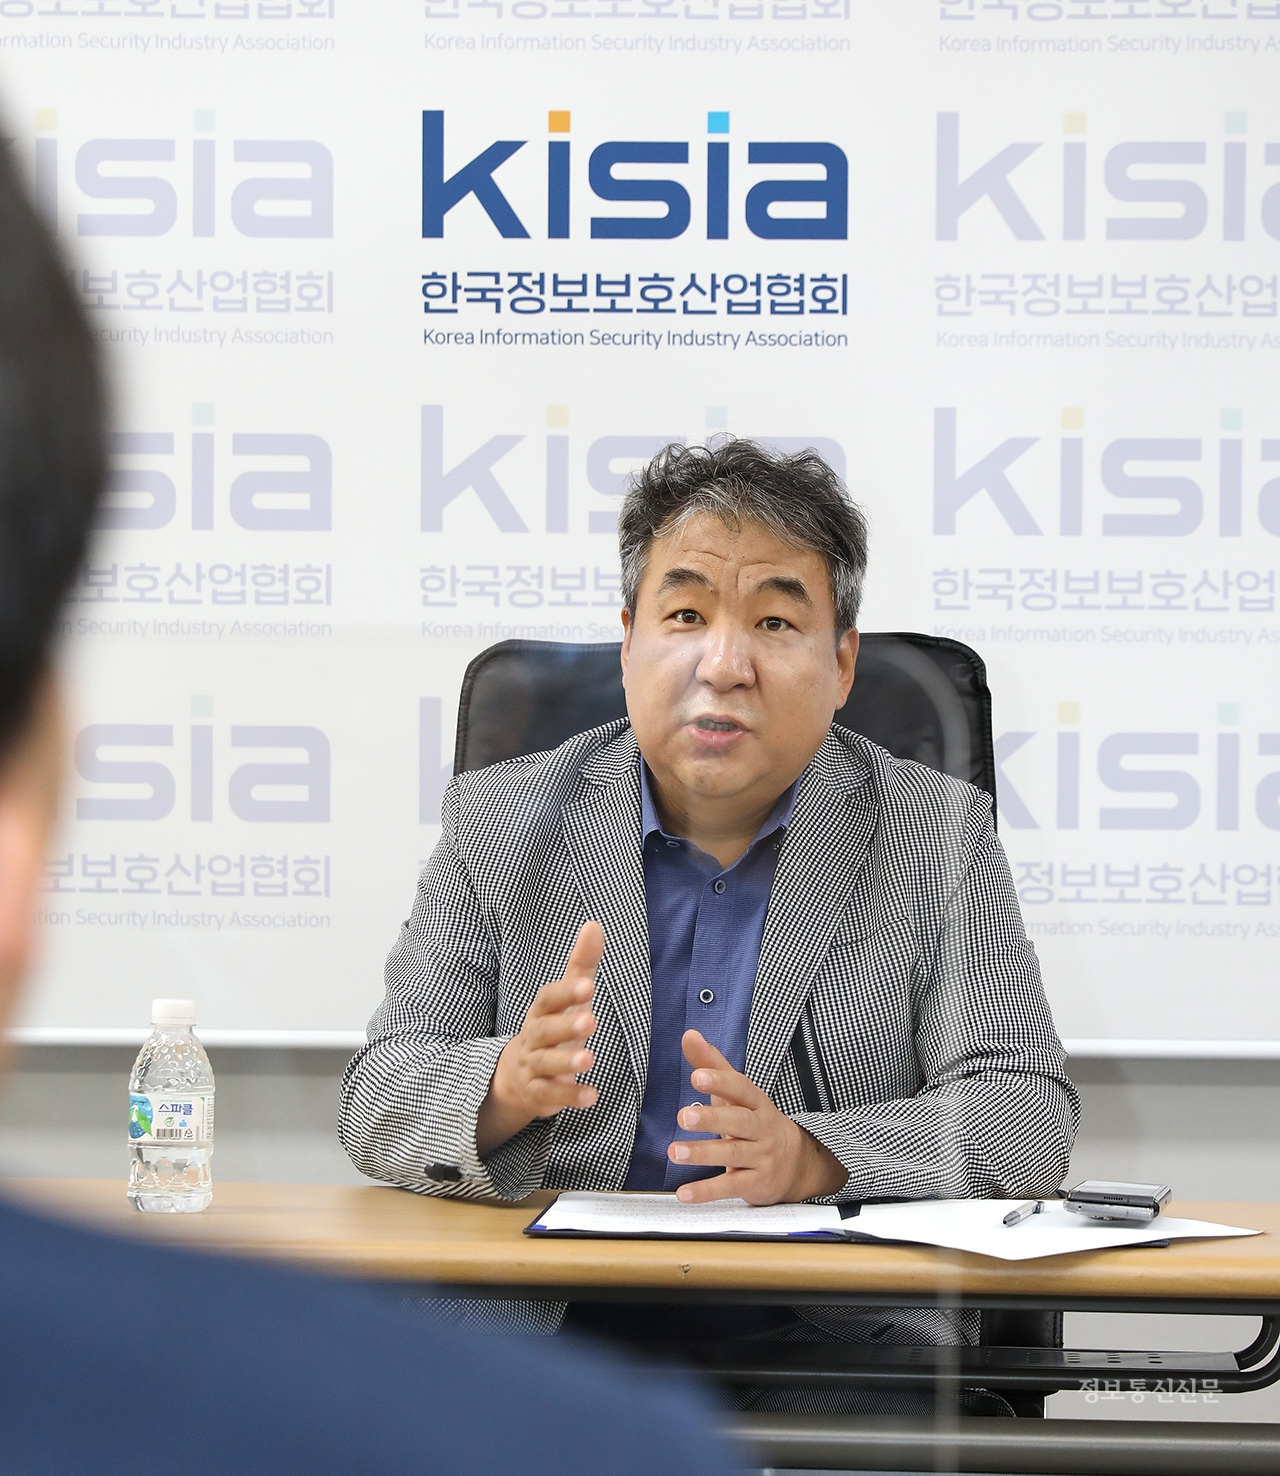 이동범 회장은 스타트업 육성, 해외진출, 인력양성을 KISIA의 중점 사업으로 추진할 것이라고 말했다.